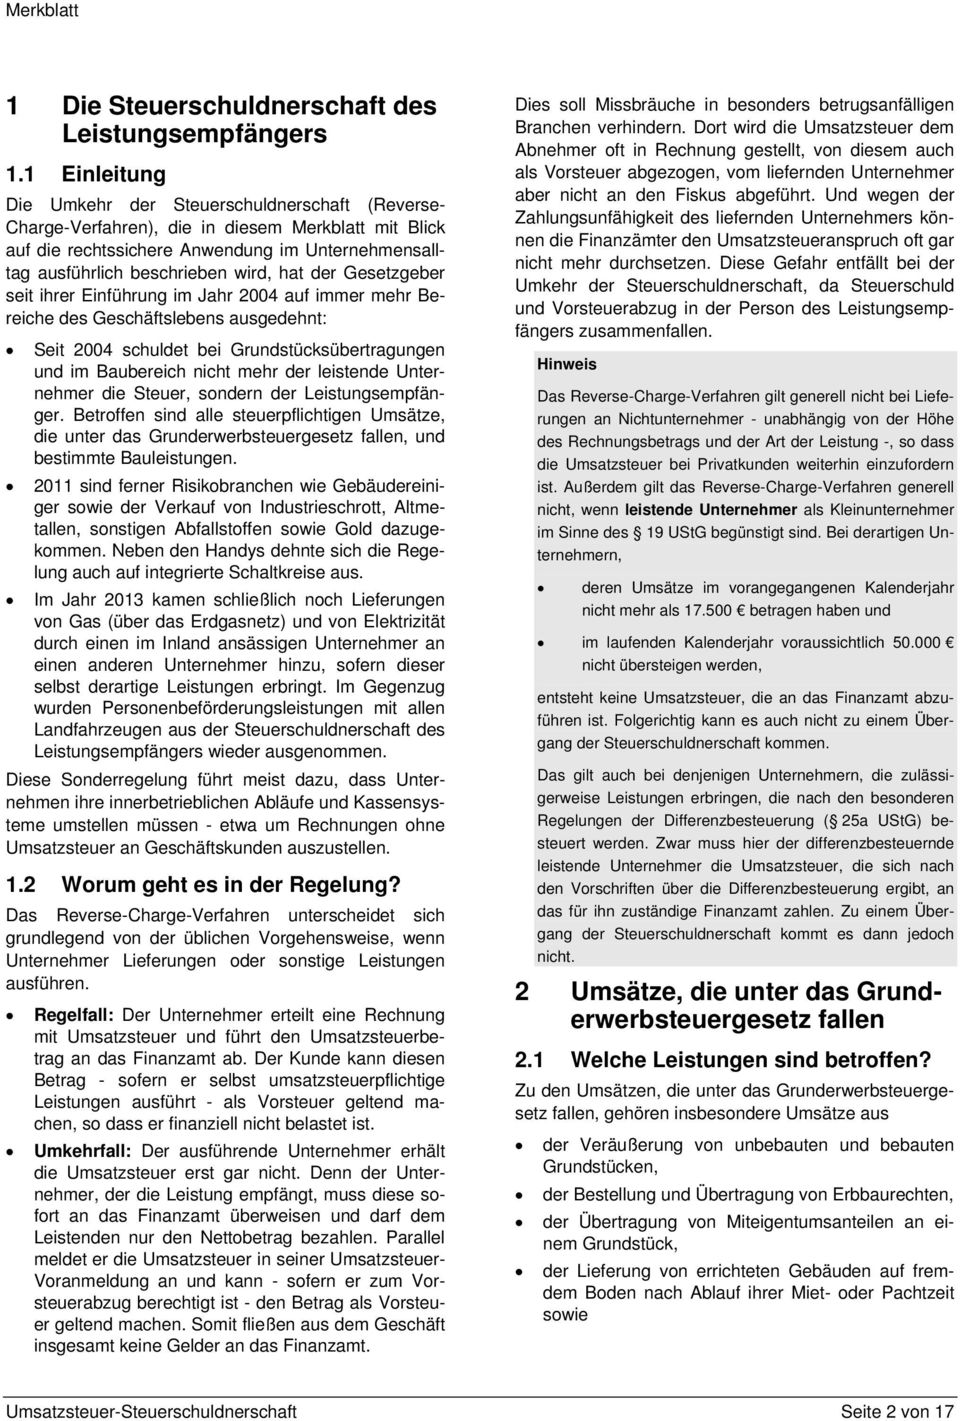 Merkblätter Merkblatt Umsatzsteuer Steuerschuldnerschaft Inhalt